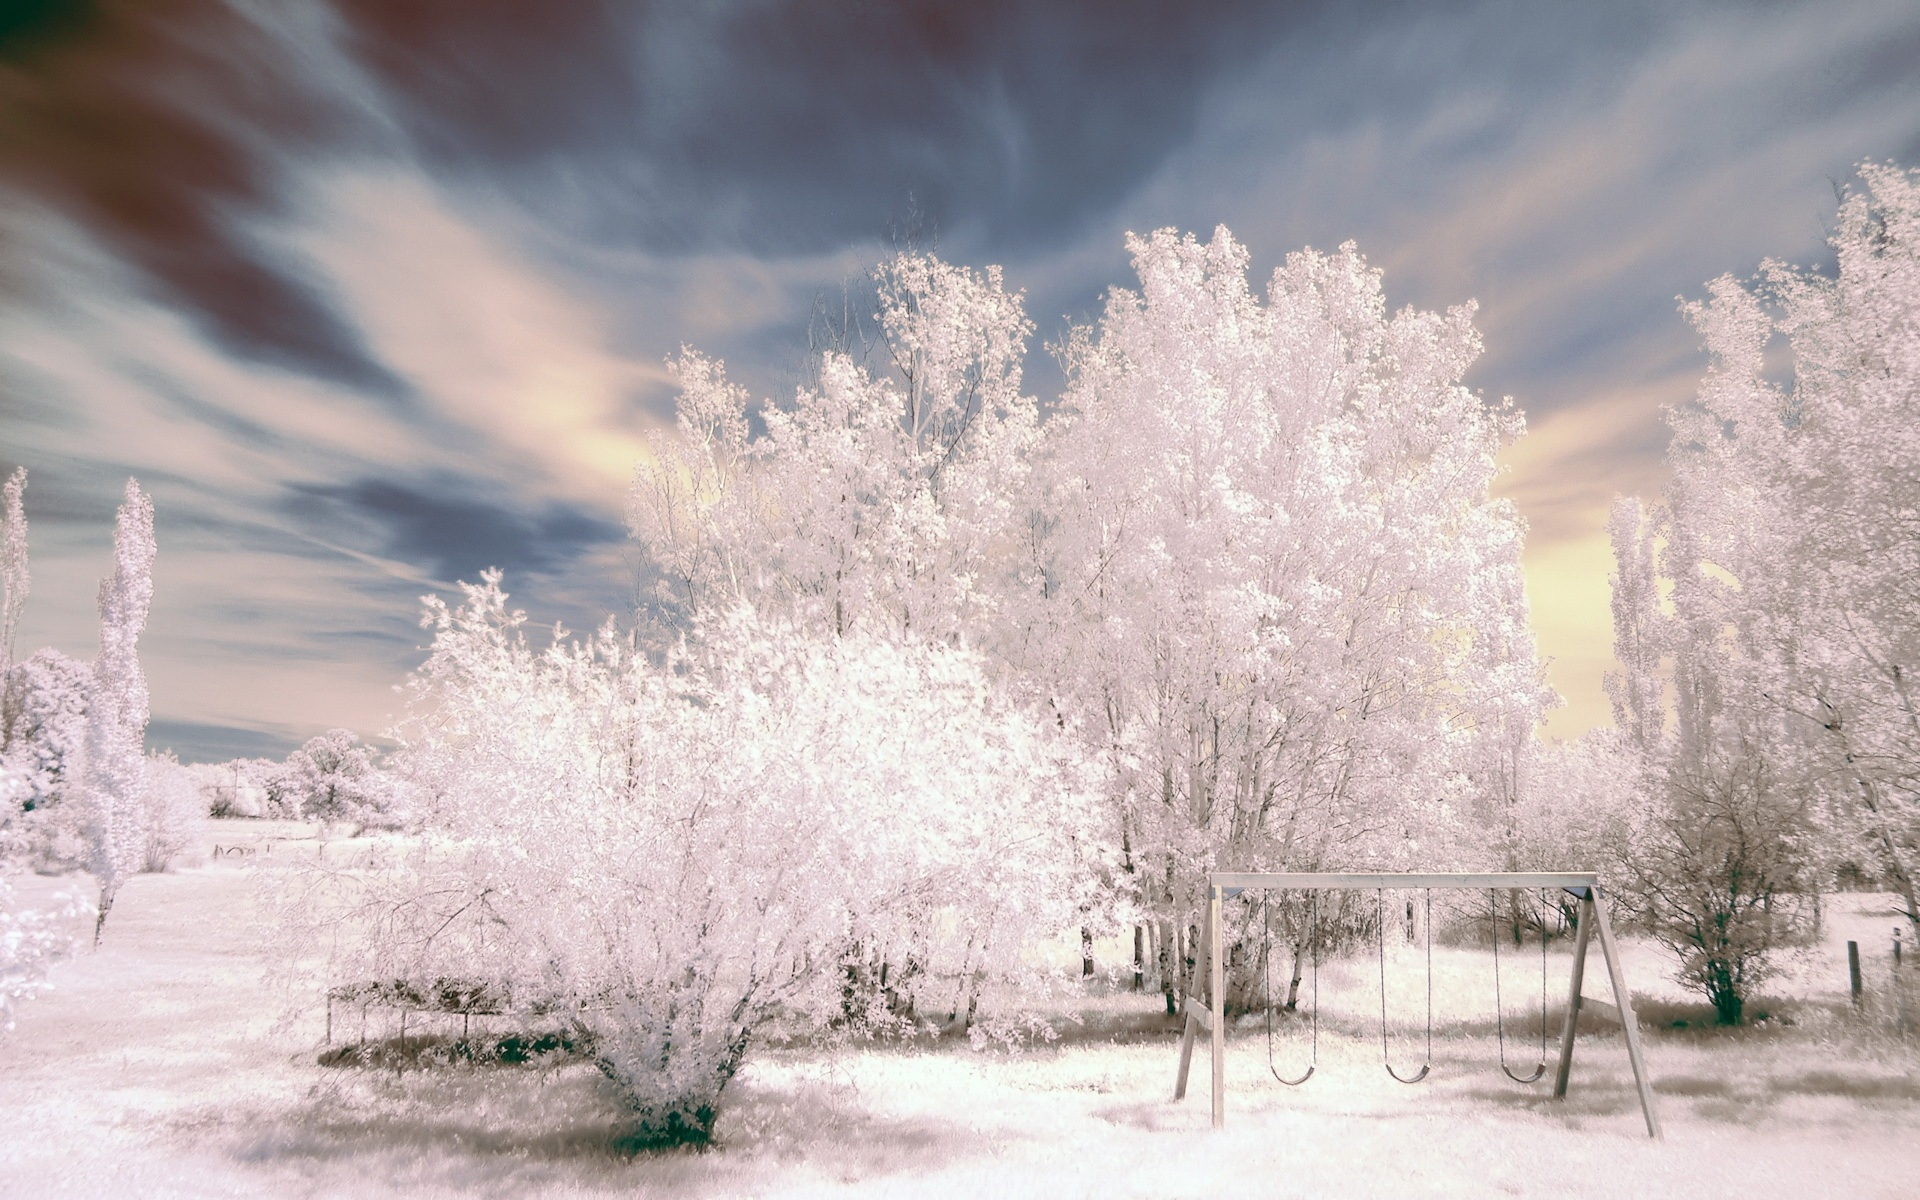 电脑主题图片大全 冬季雪景唯美自然风光图片(6)